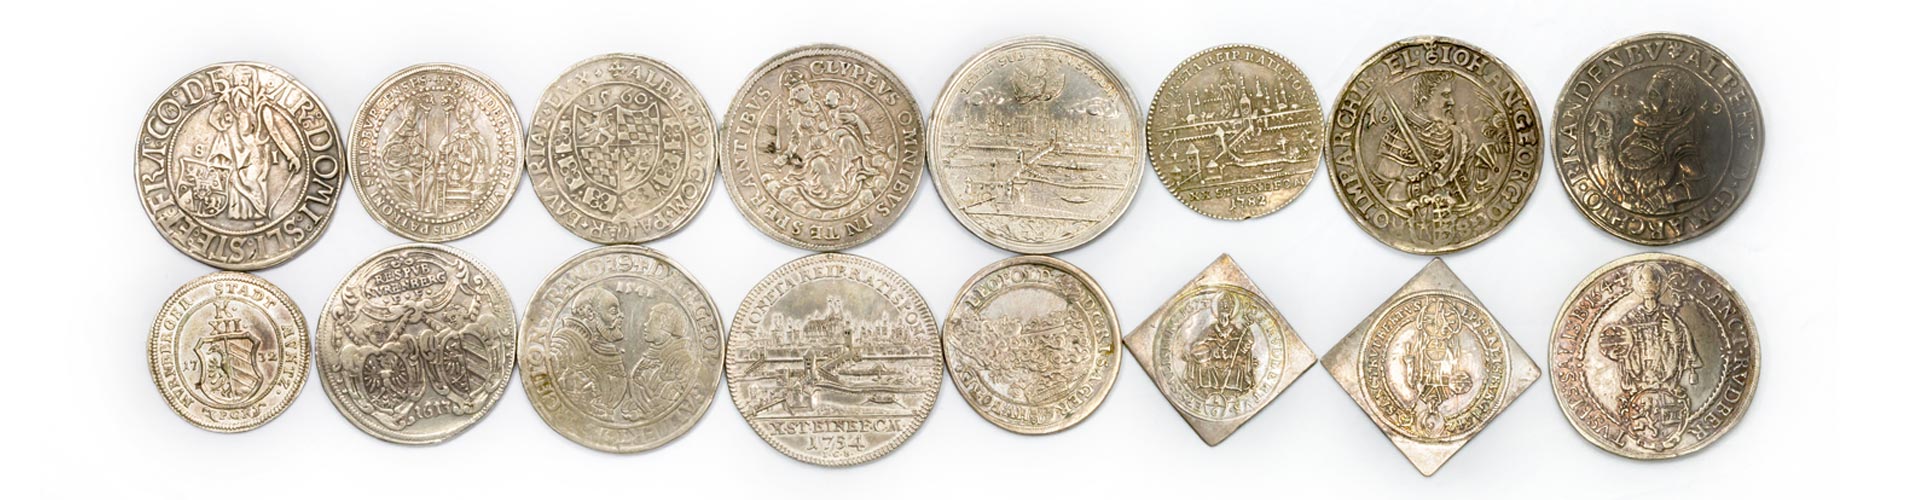 Verschiedene historische Silbermünzen und Sammlermünzen aus Silber